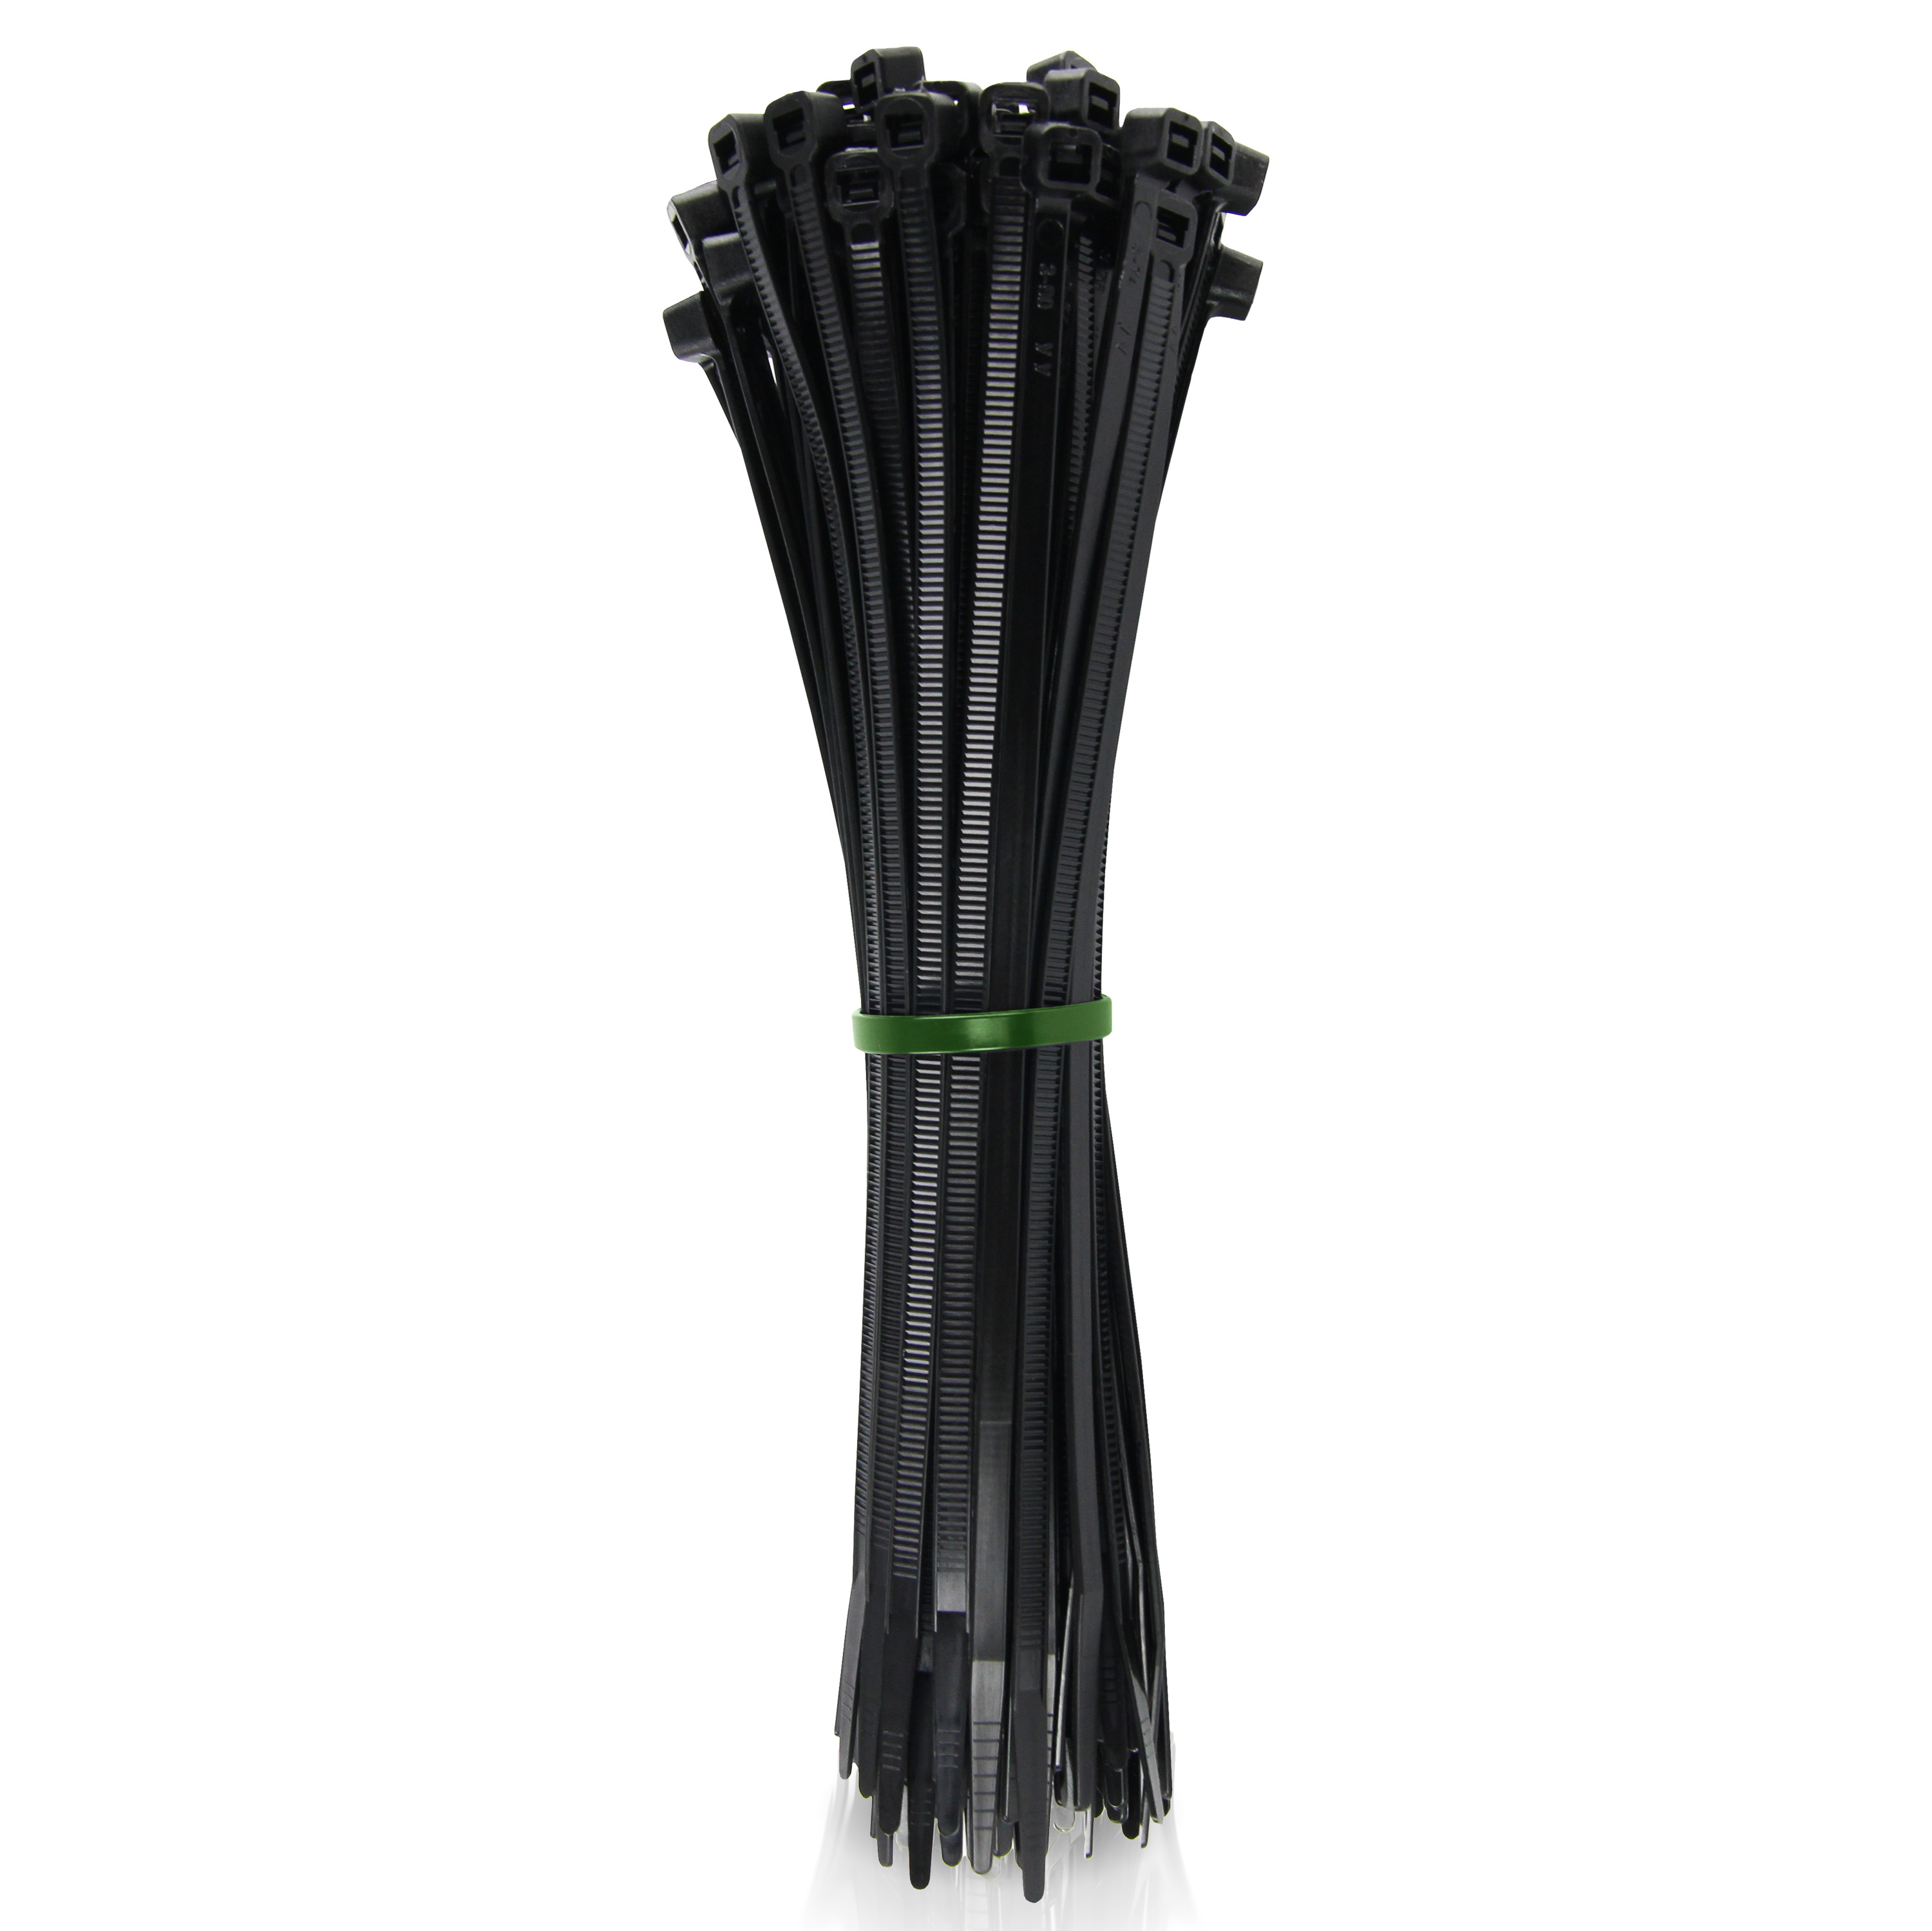 Kabelbinder 9x300mm schwarz UV- und witterungsbeständig